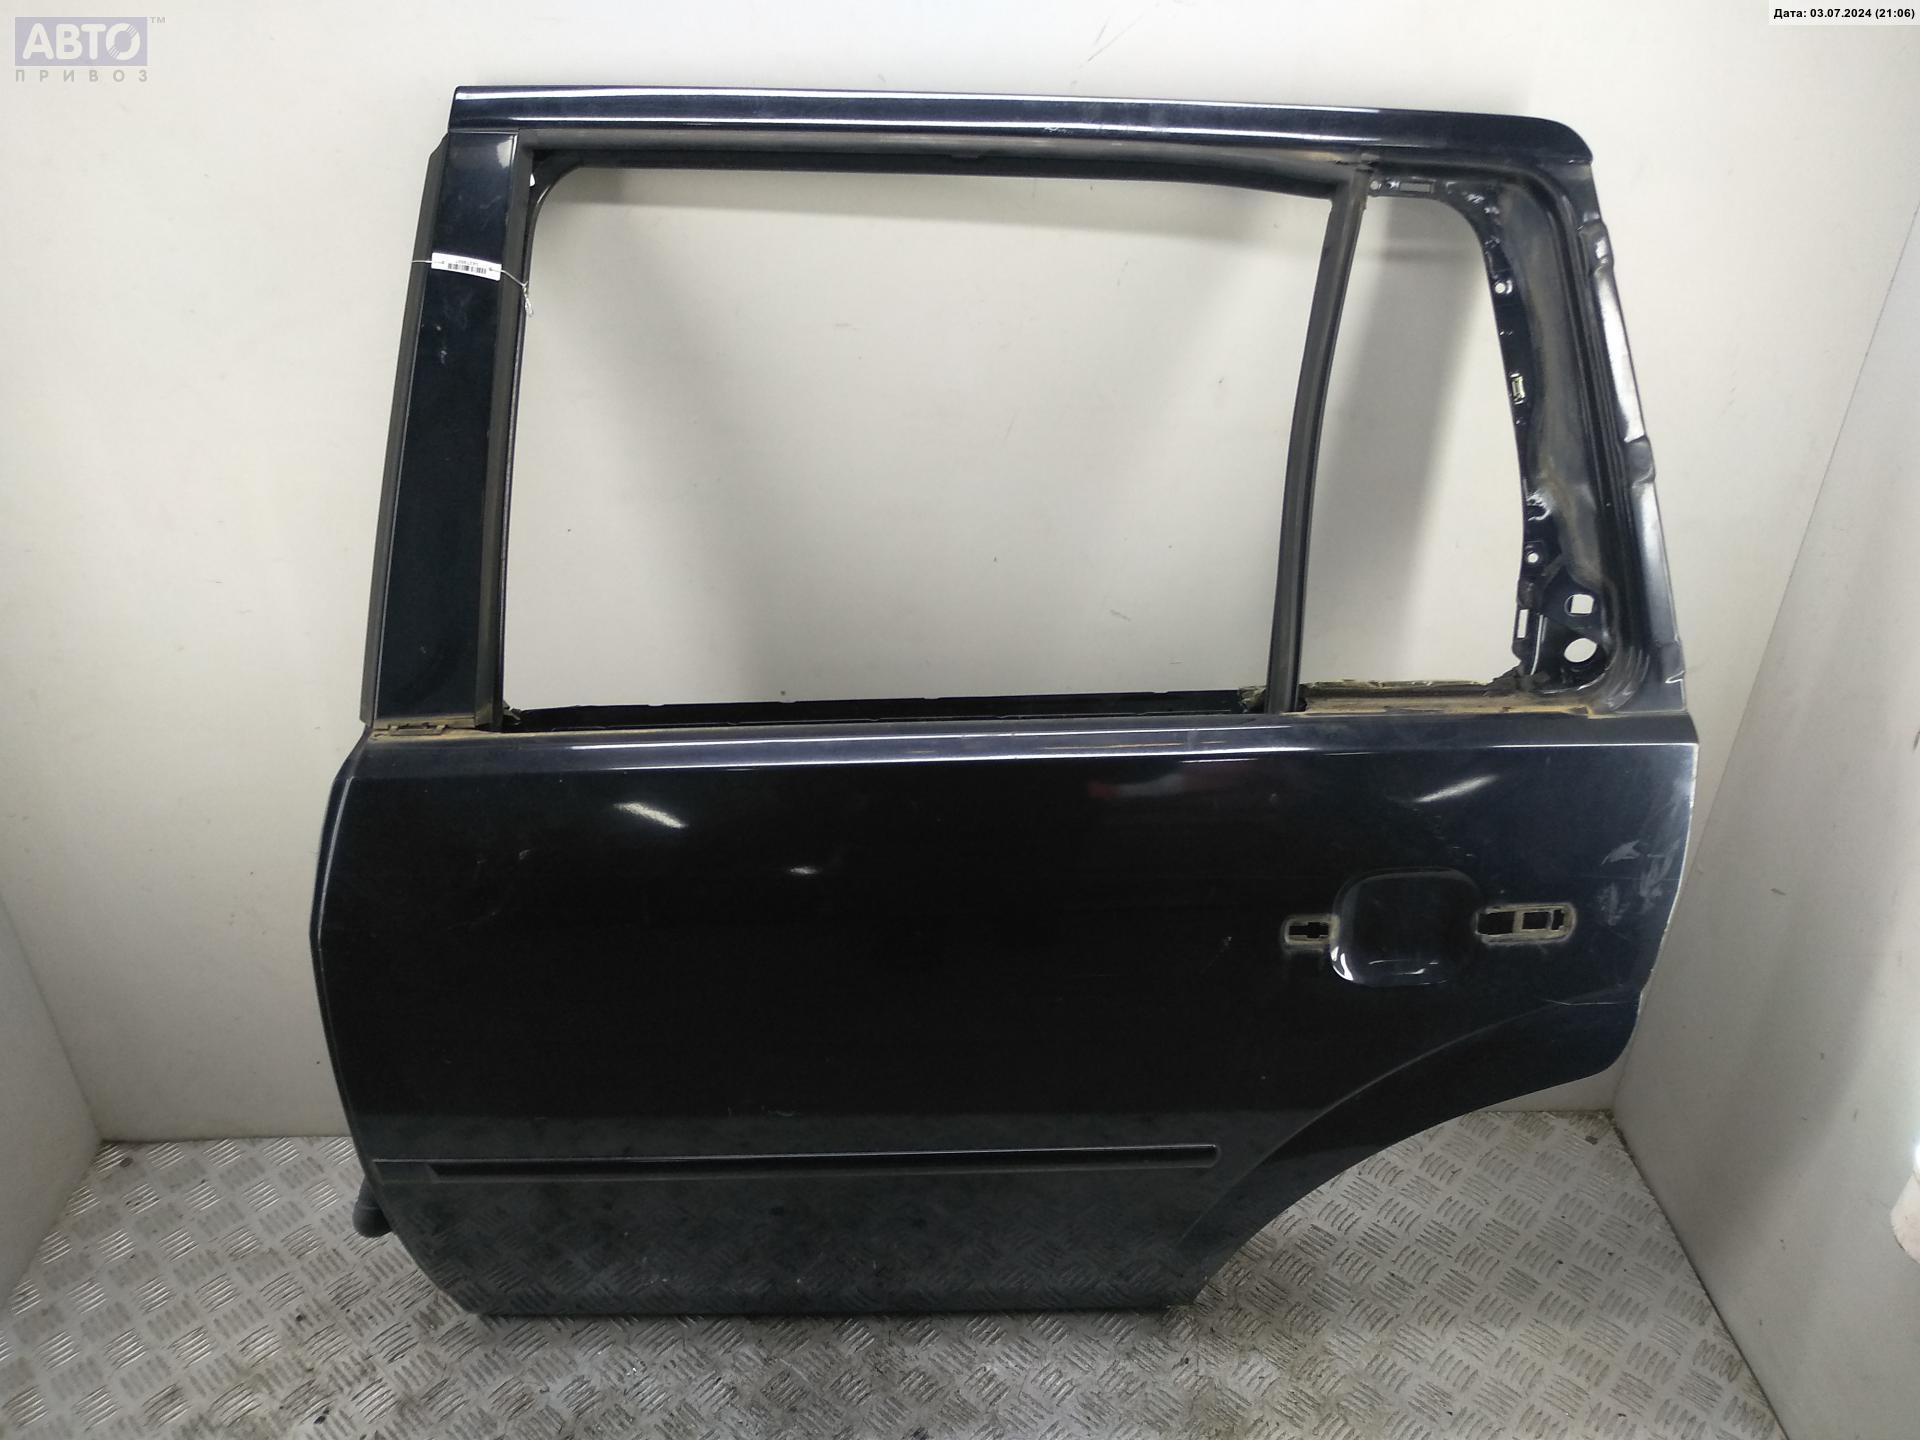 Дверь боковая задняя левая для Ford Mondeo III бу, 2004, купить в РФ с разборки из Европы, 54379007